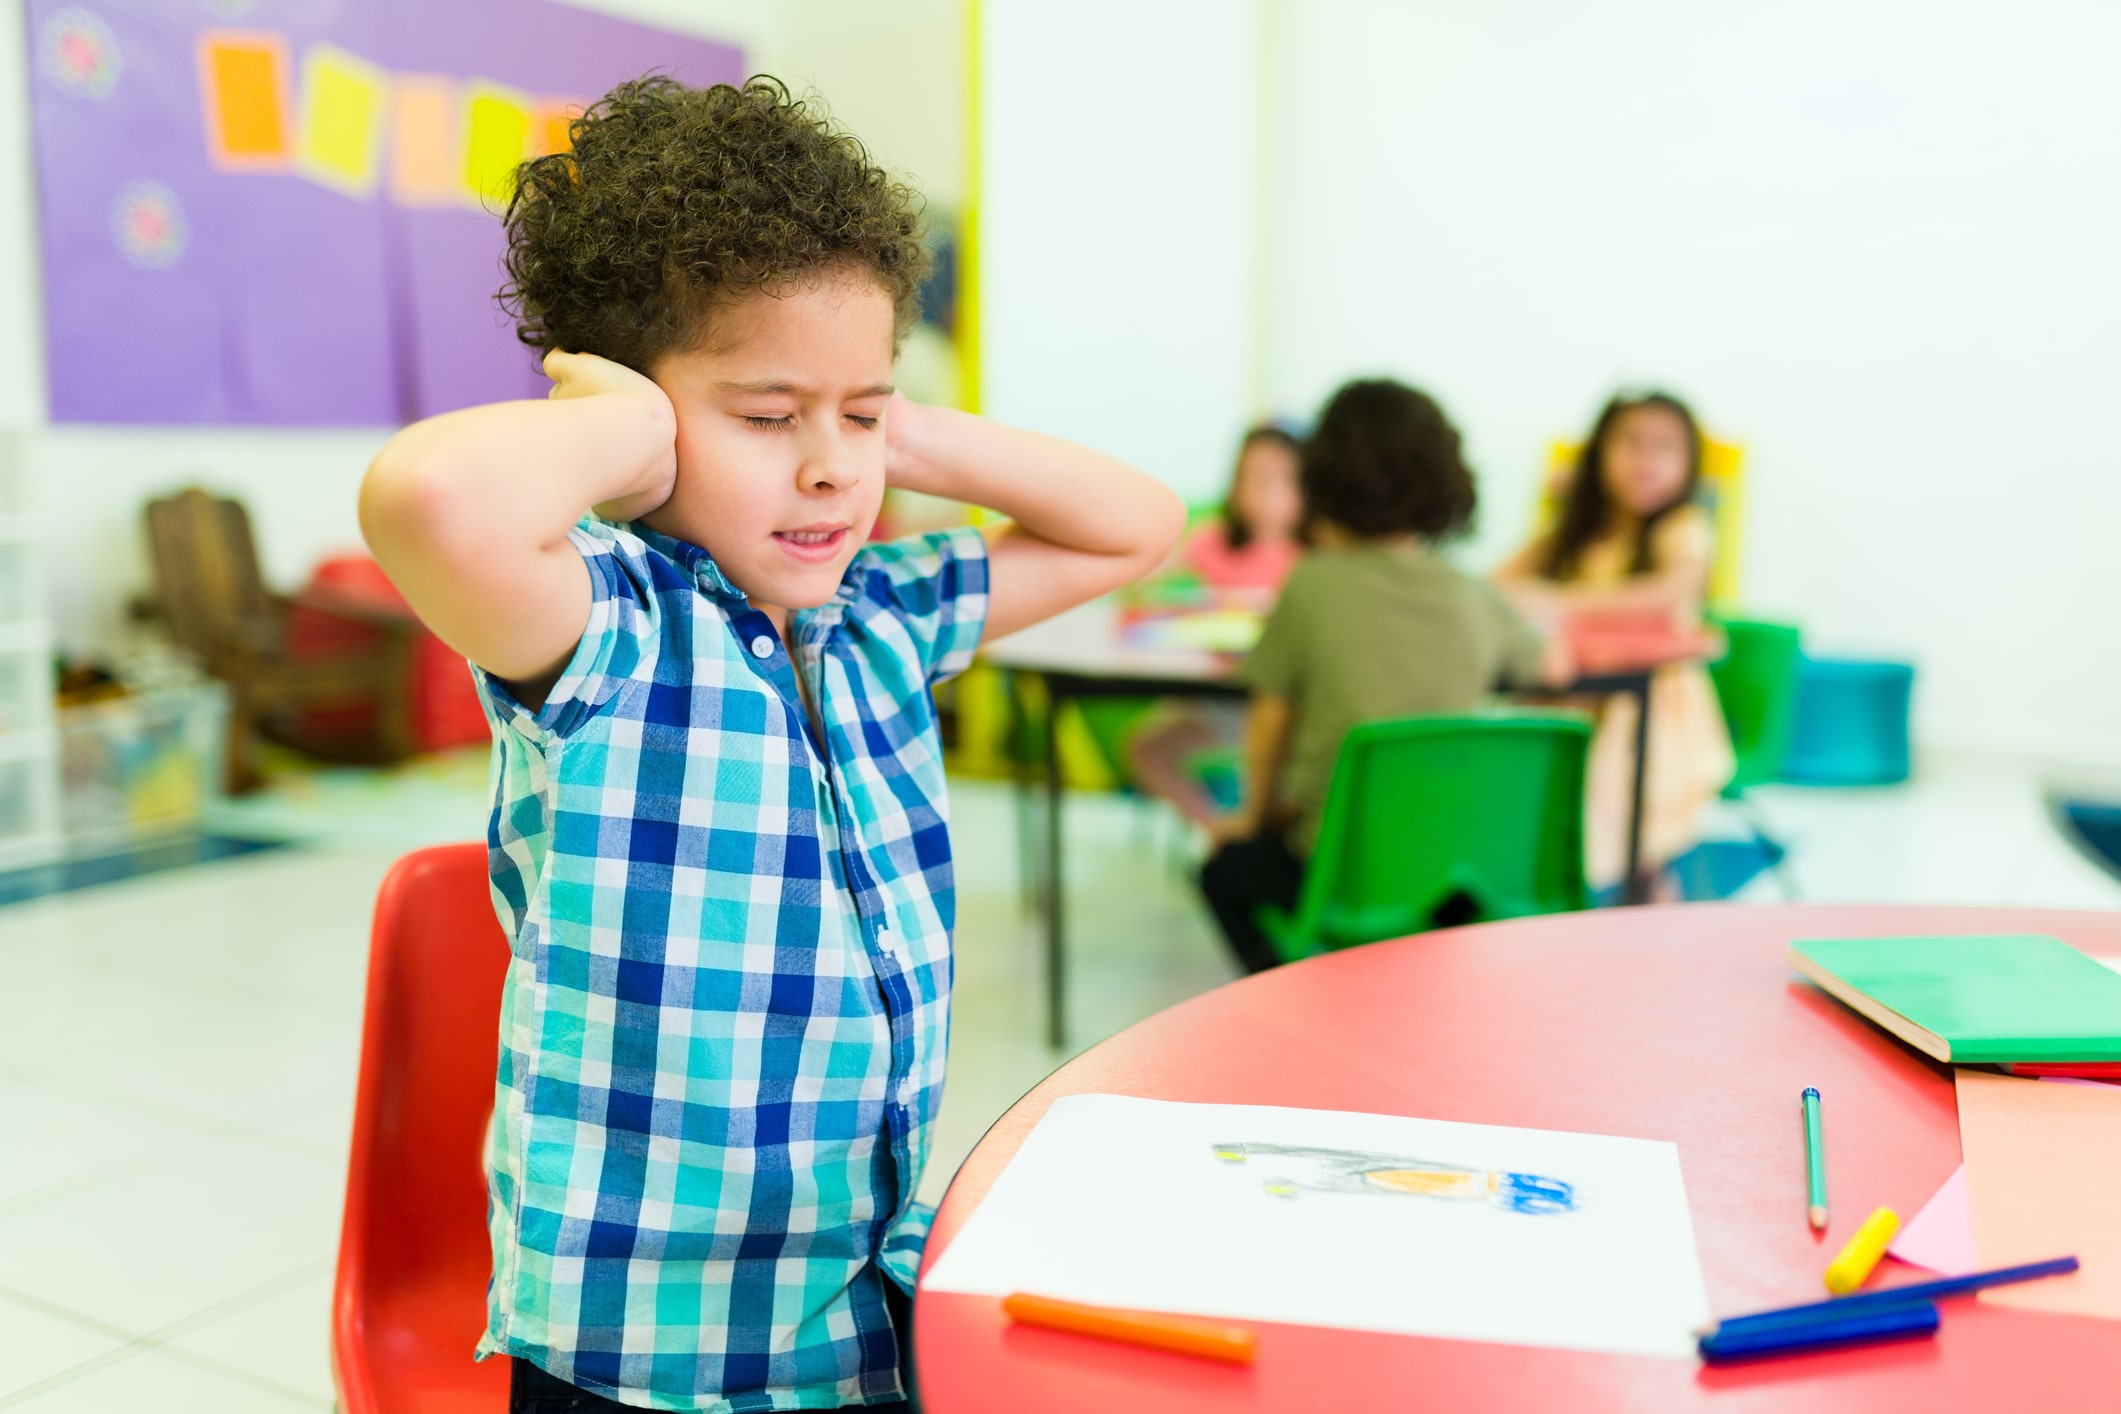 Overwhelmed child with autism in kindergarten